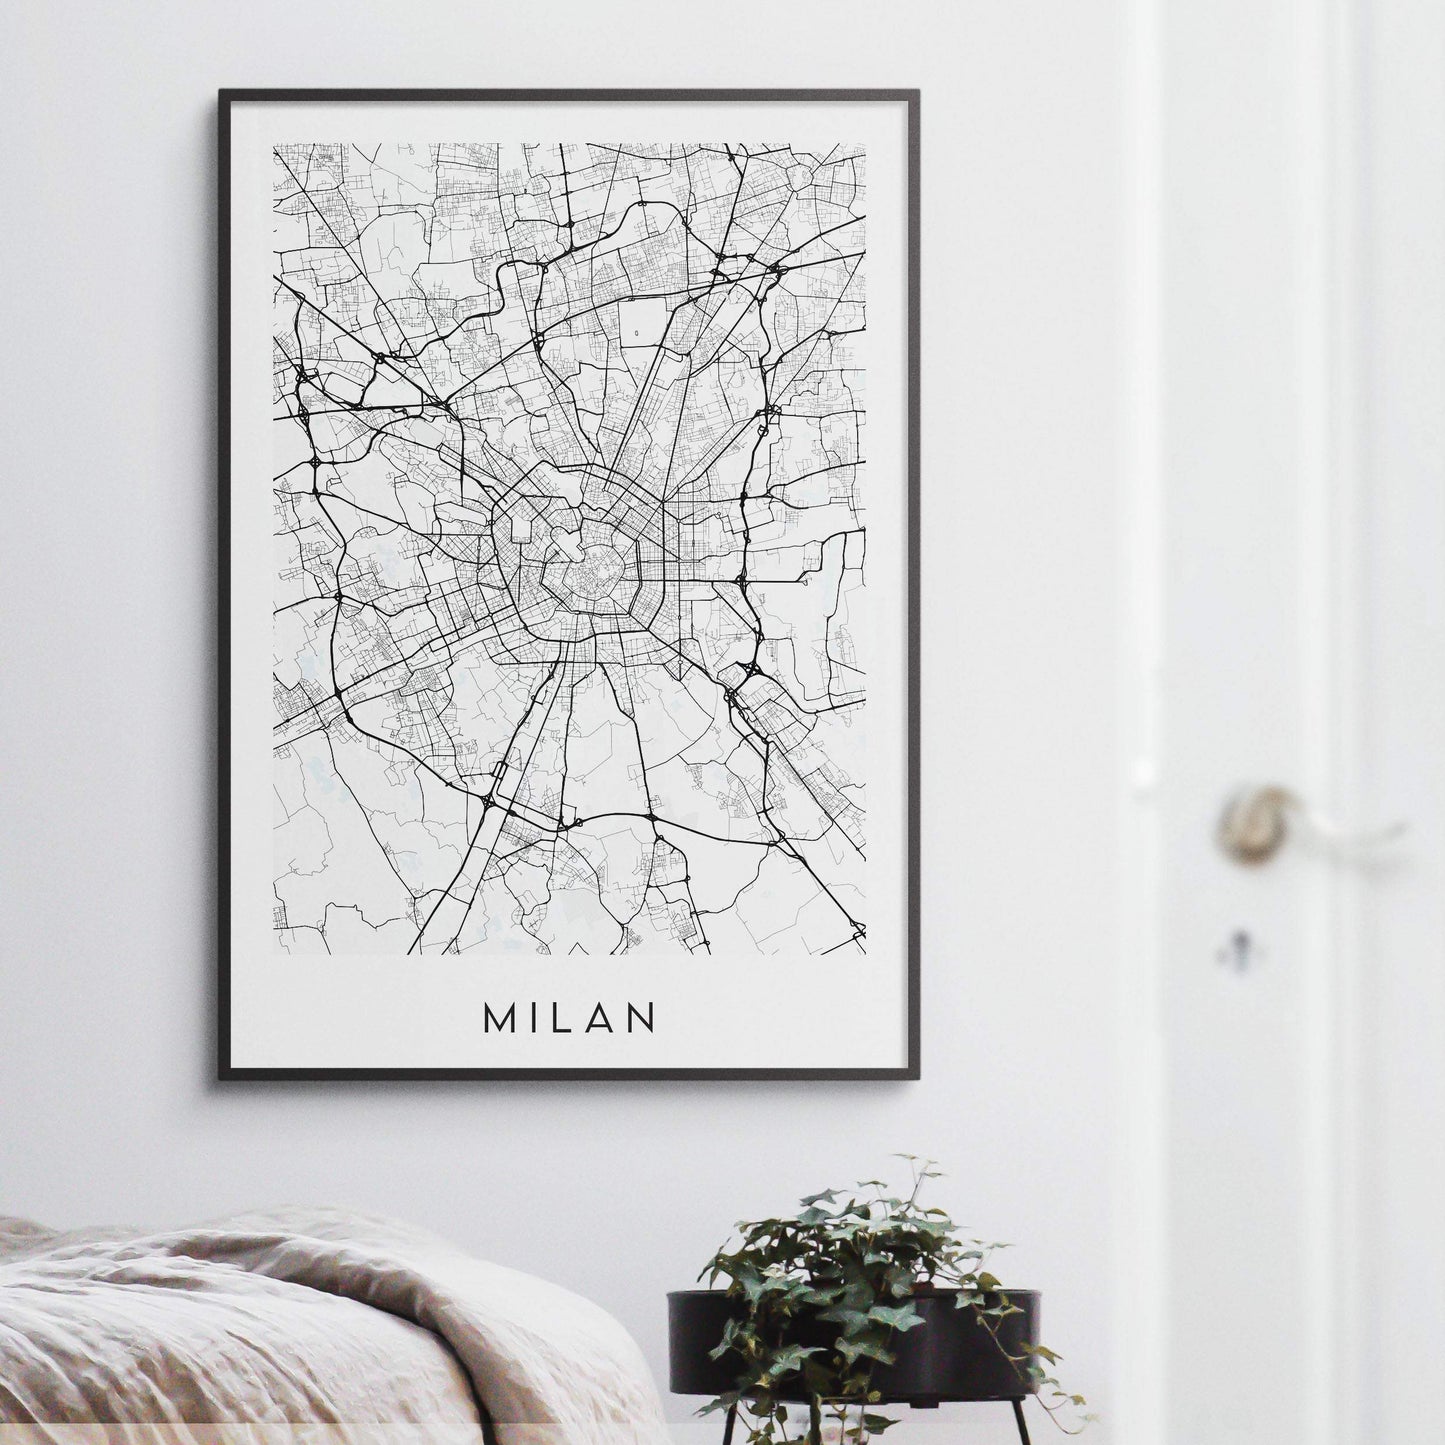 Milan Map Print - Italy